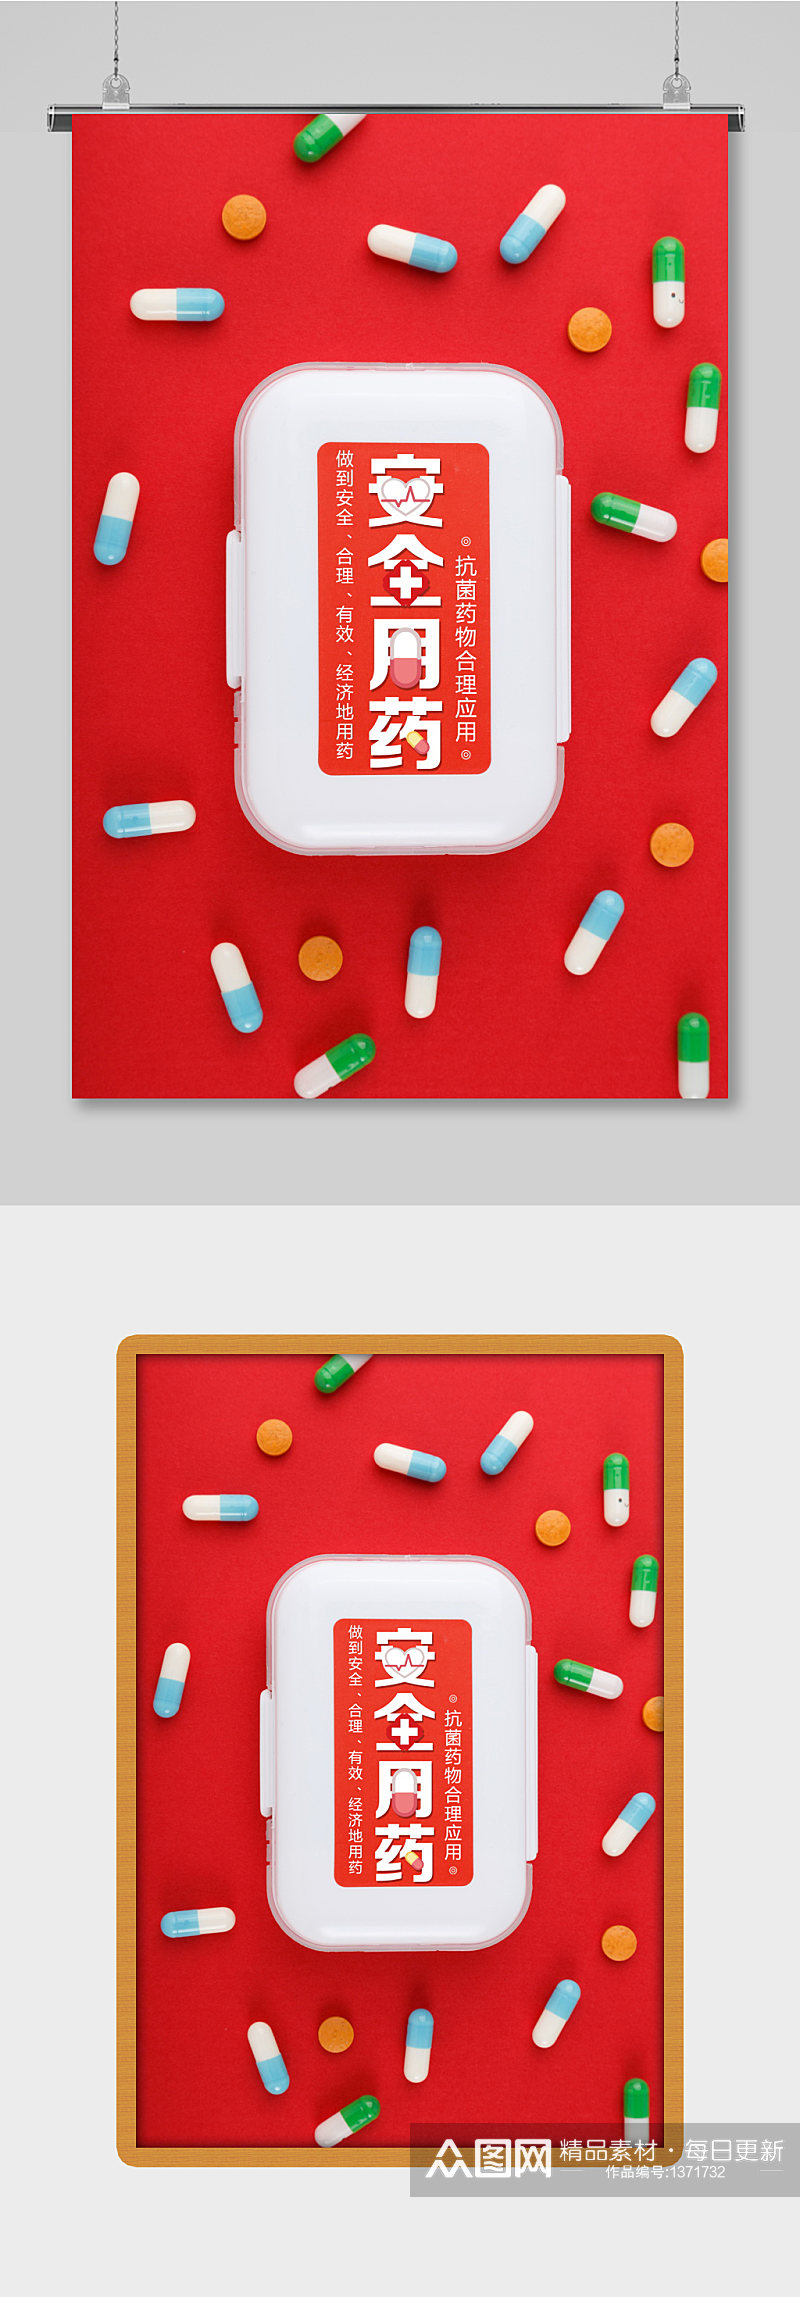 红色简约医疗用品安全用药药品海报素材